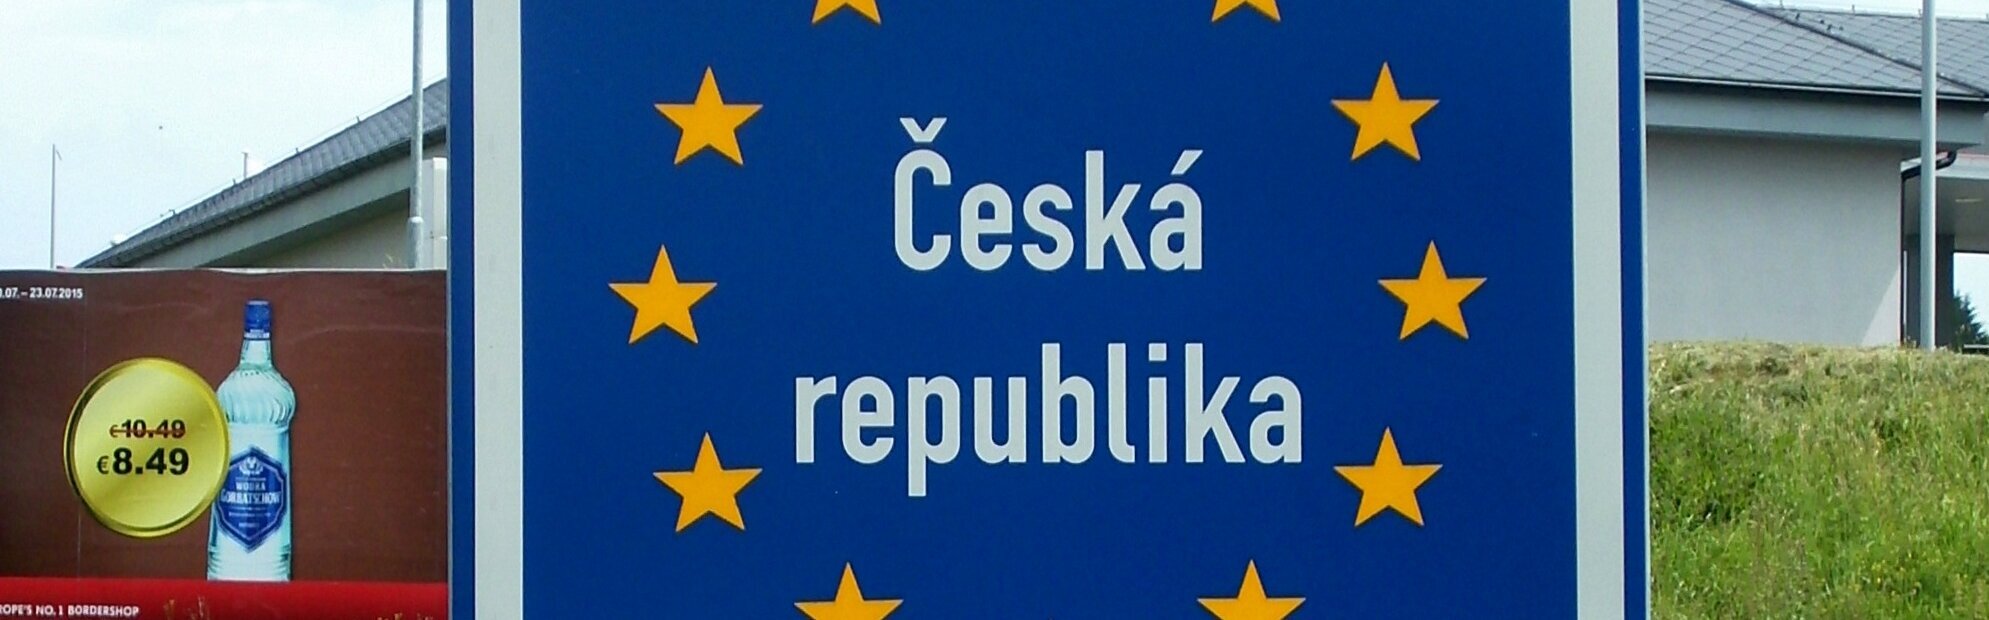 Tschechien Grenze